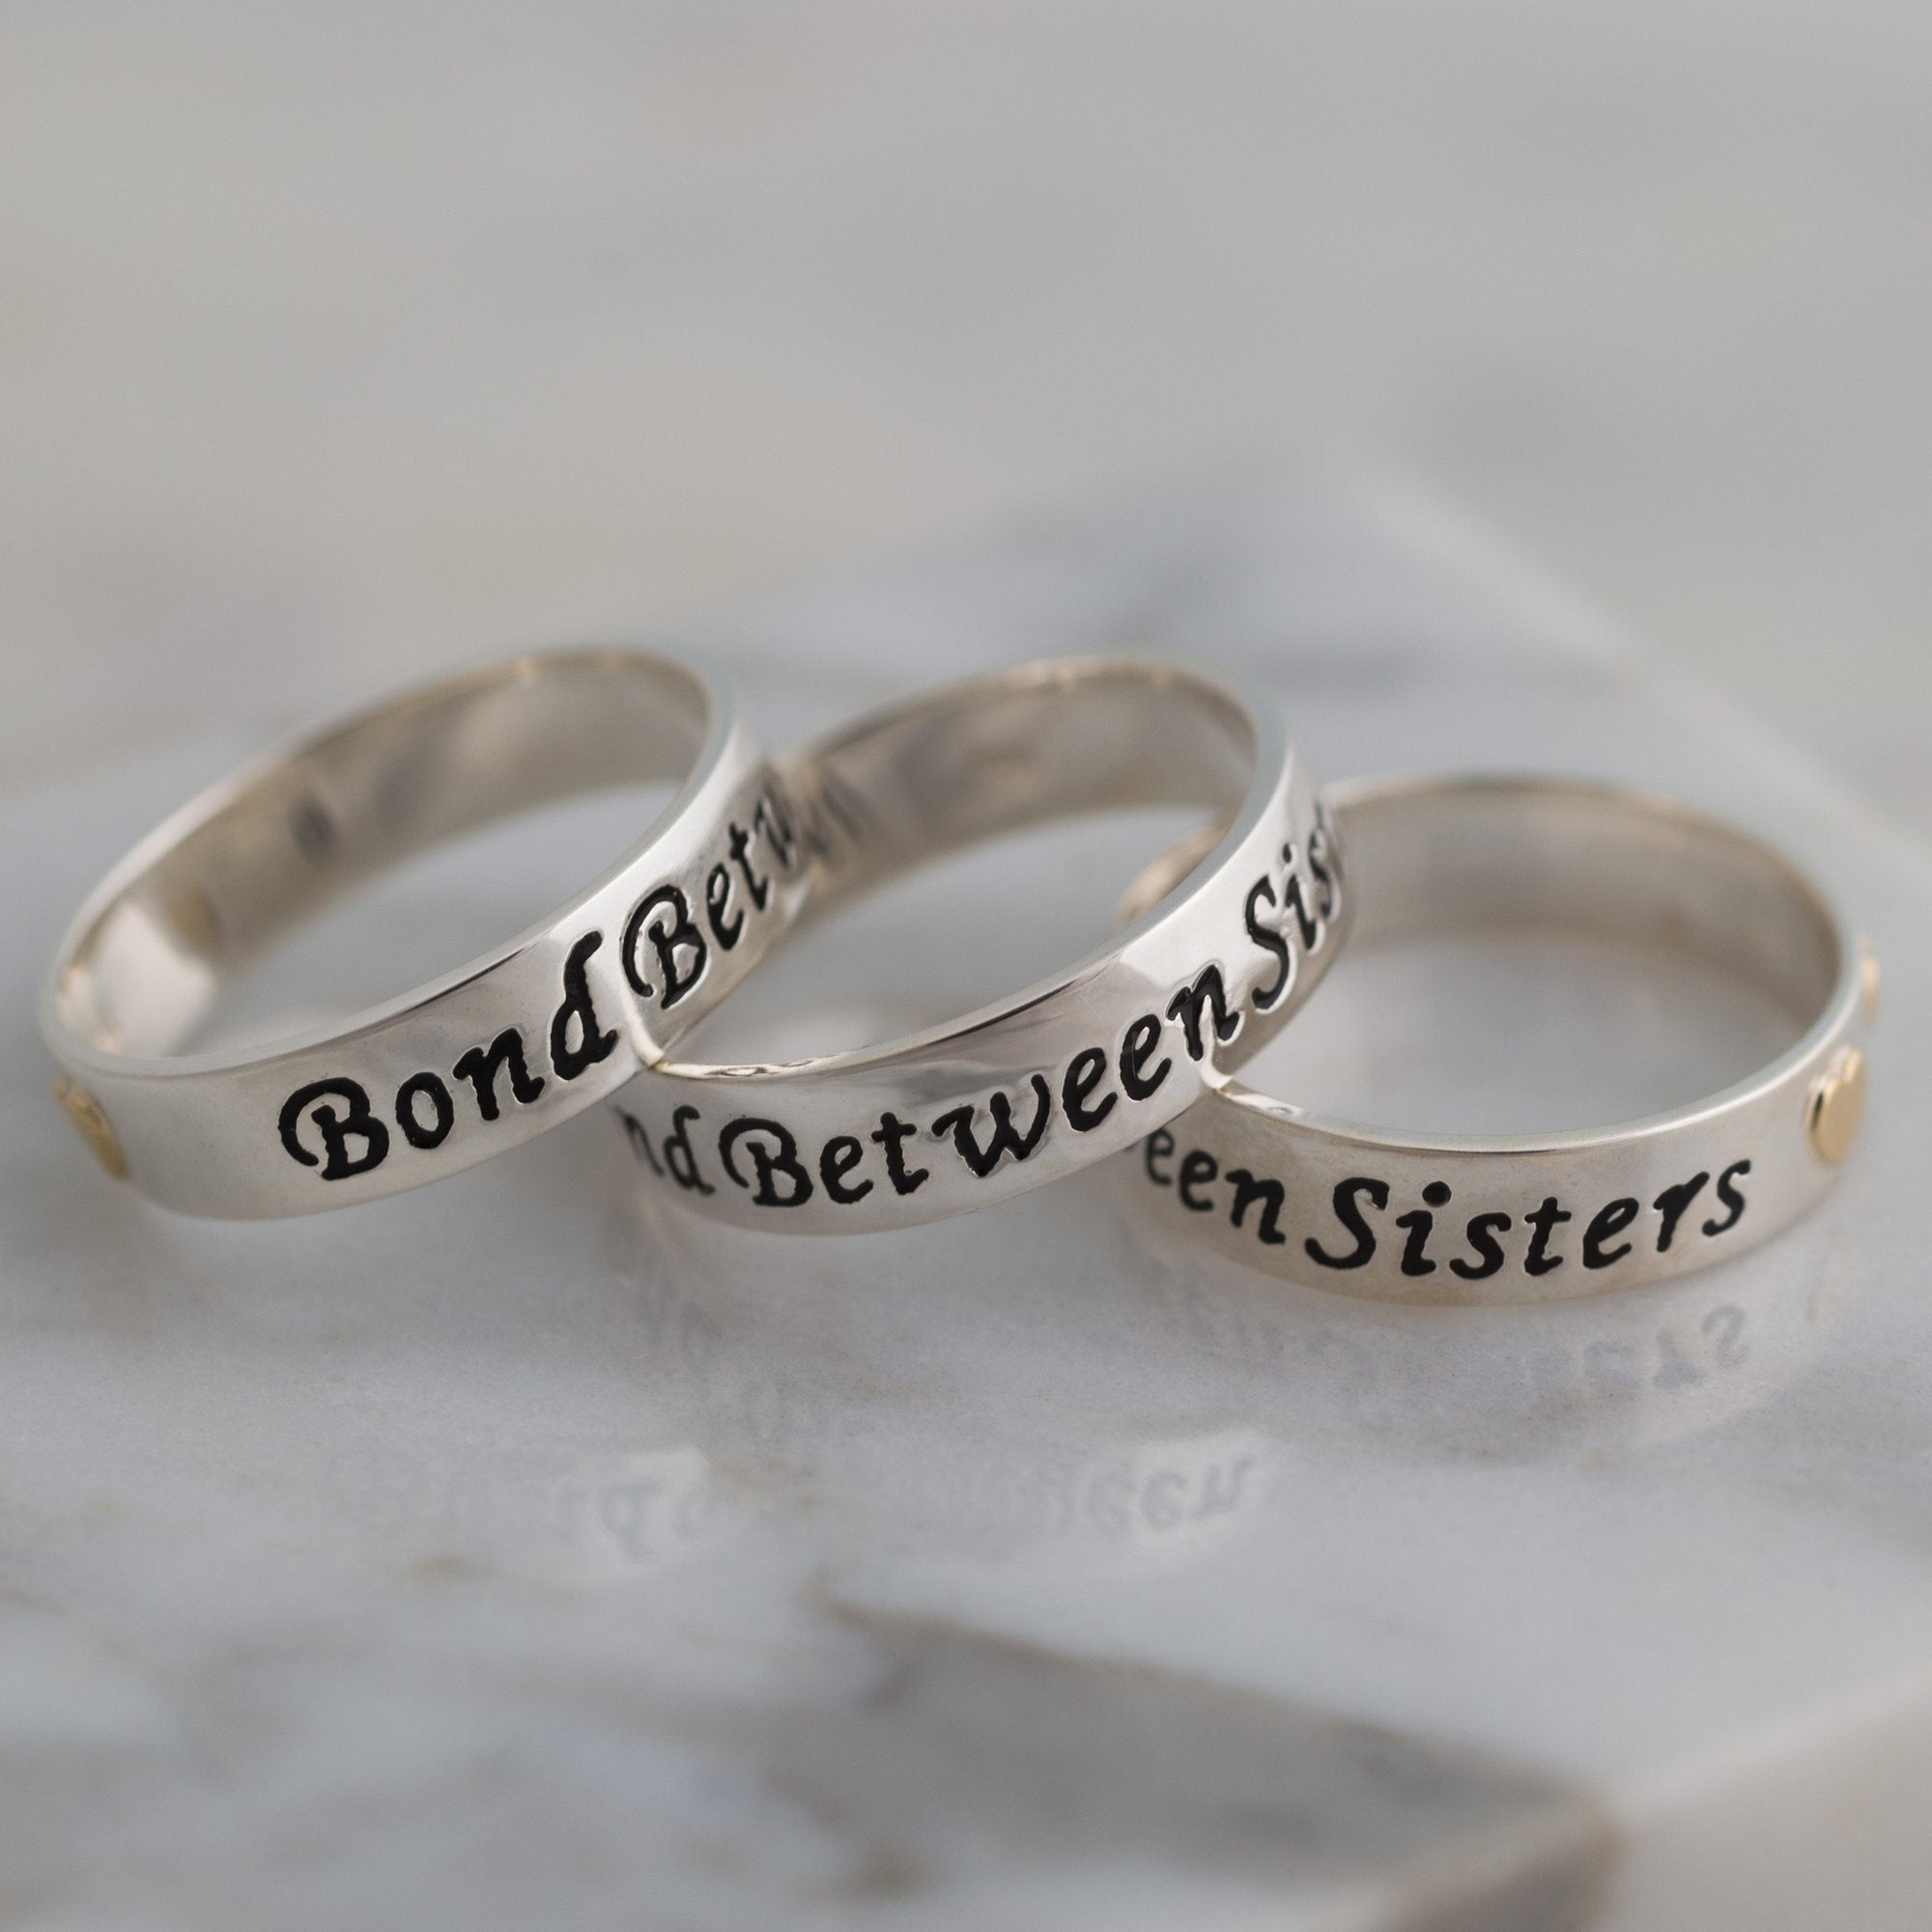 Bond Between Sisters Sterling Ring - 2 Sisters - 7